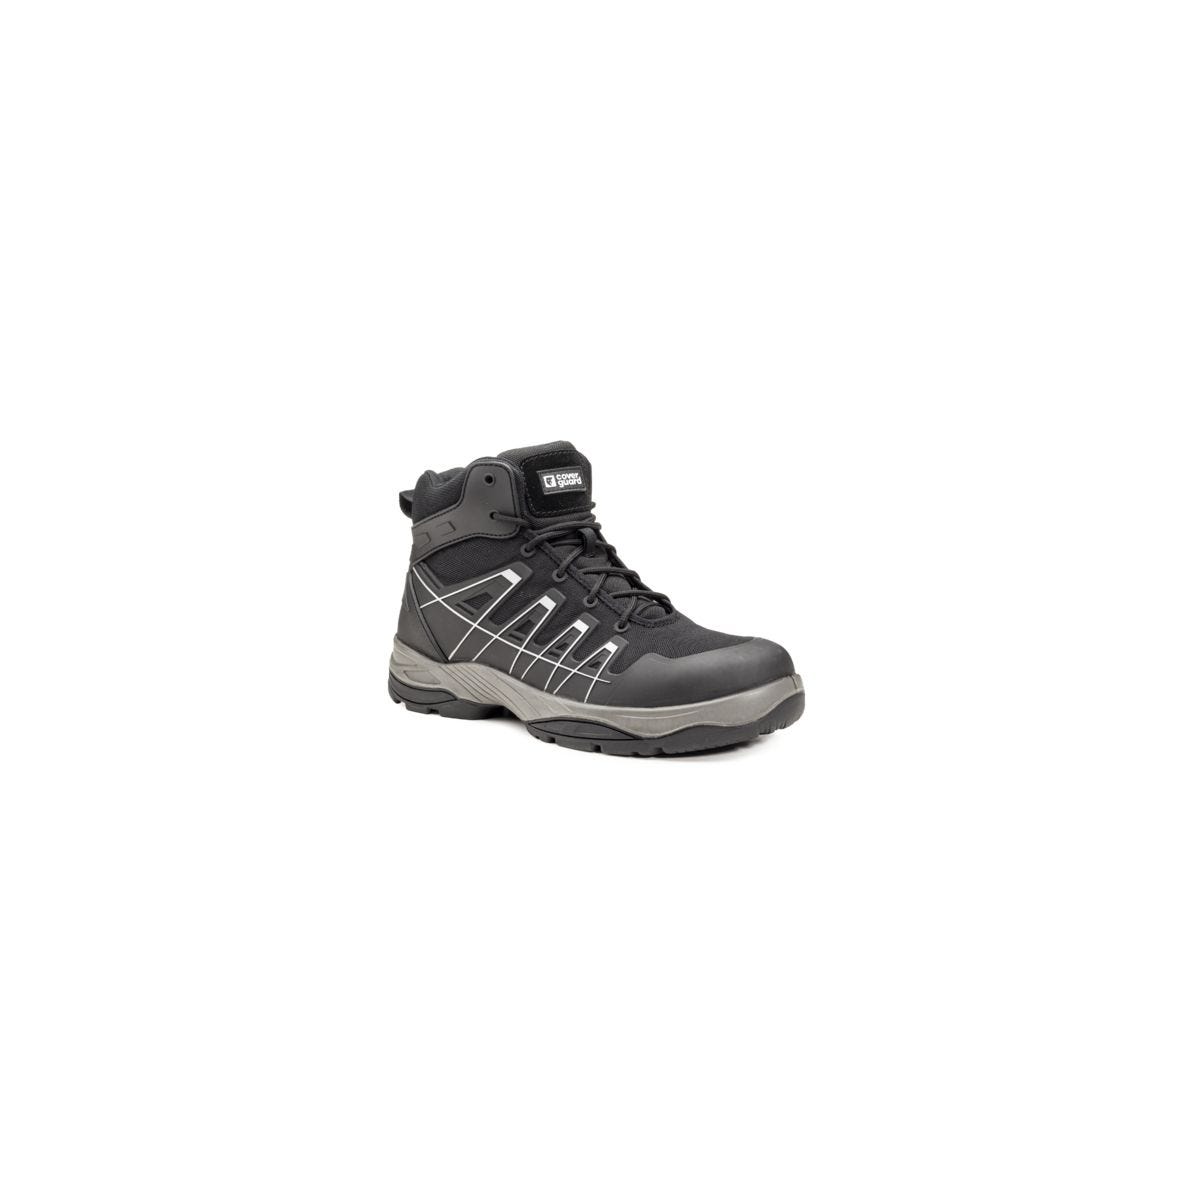 Chaussure de sécurité SCHORL S3 Haute Noir/réfléchissant - COVERGUARD - Taille 40 0